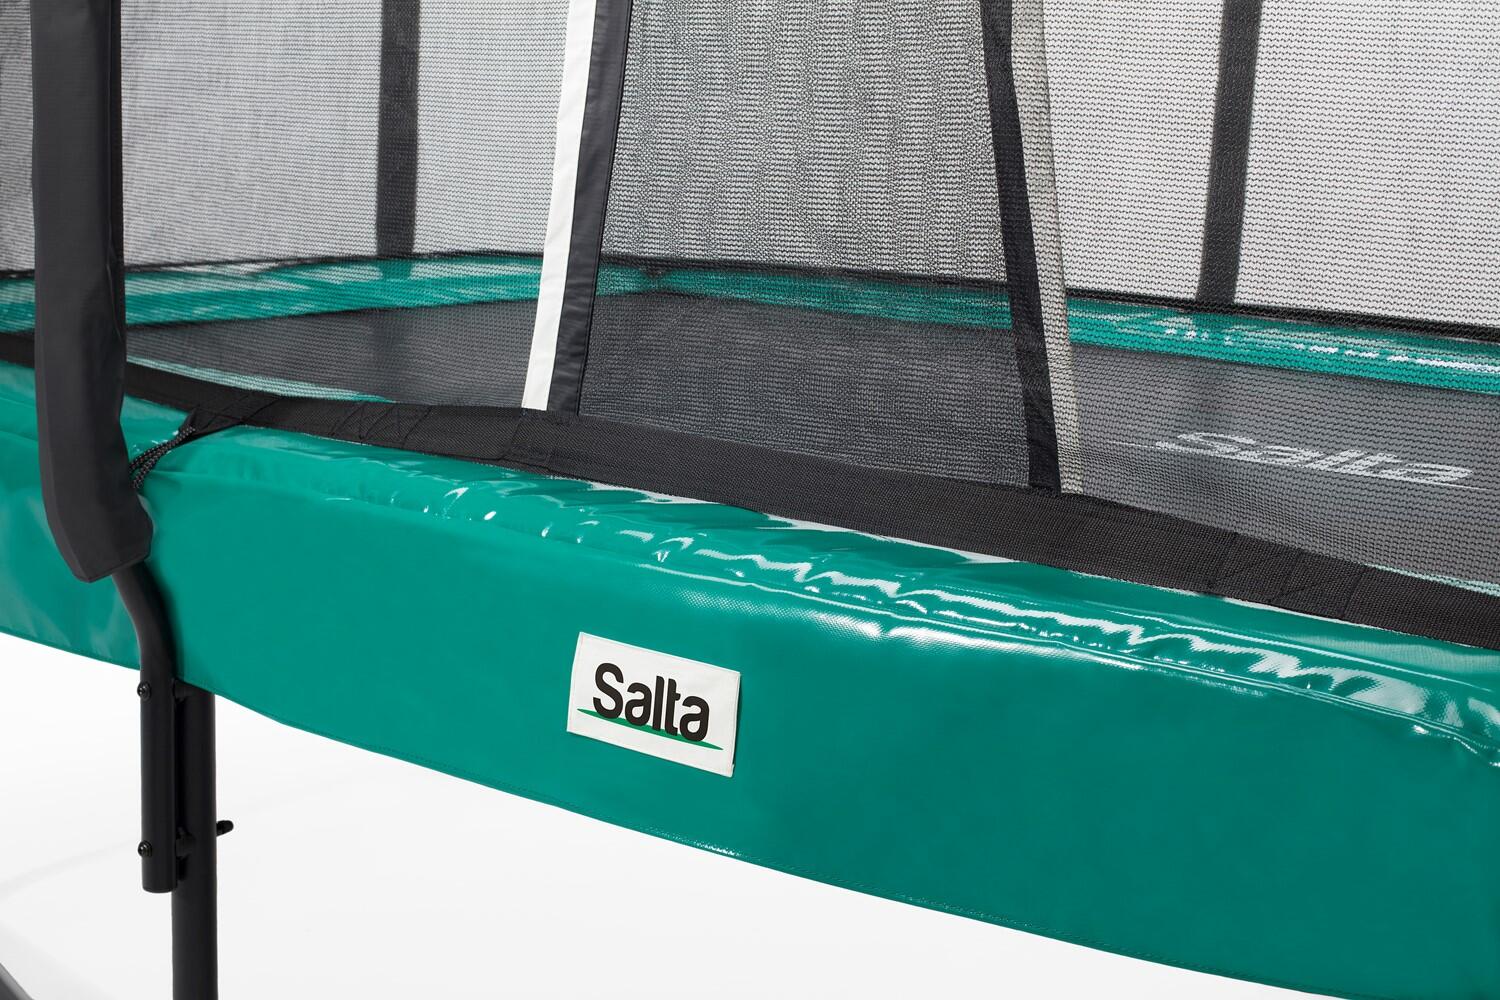 14ft x 8ft Salta Green Rectangular First Class Trampoline 2/7